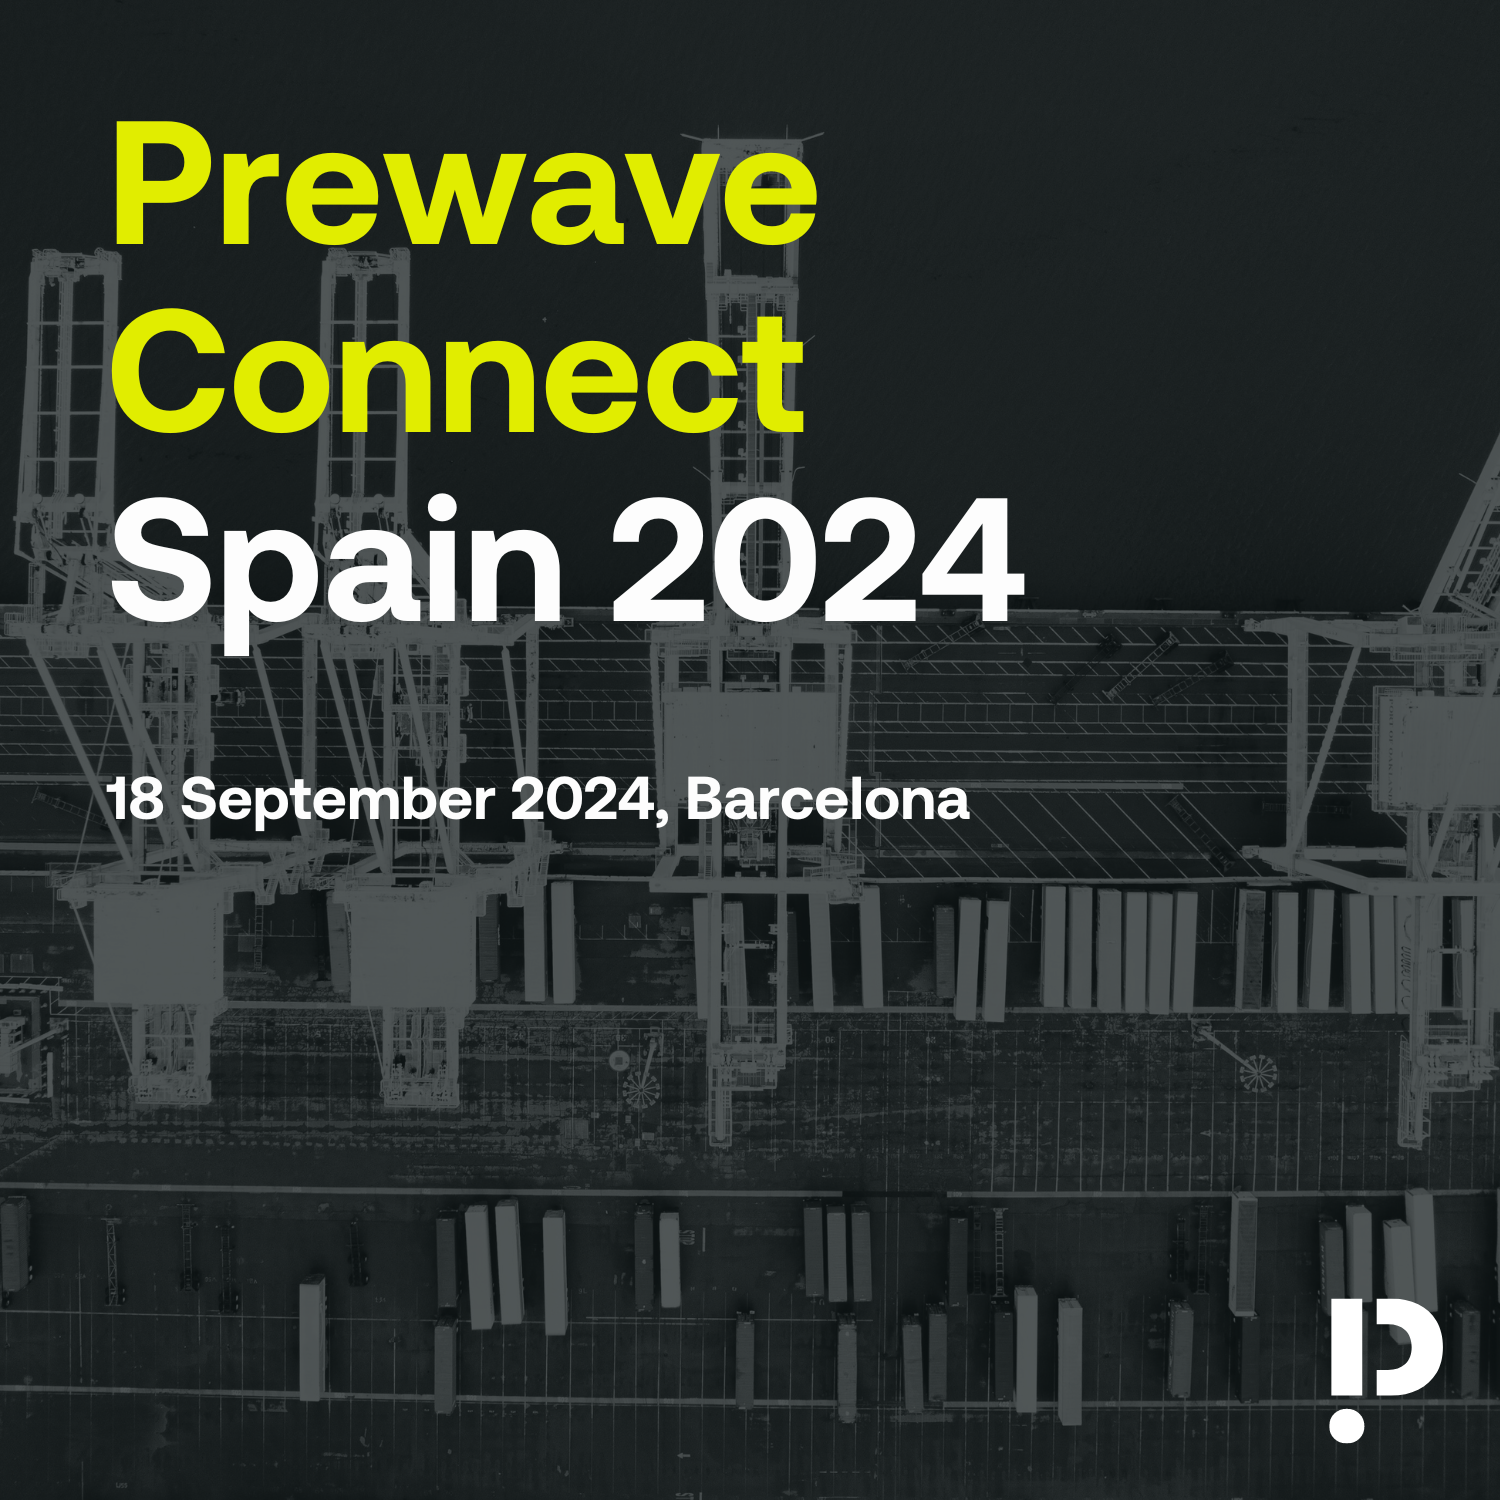 Prewave Connect Spain 2024